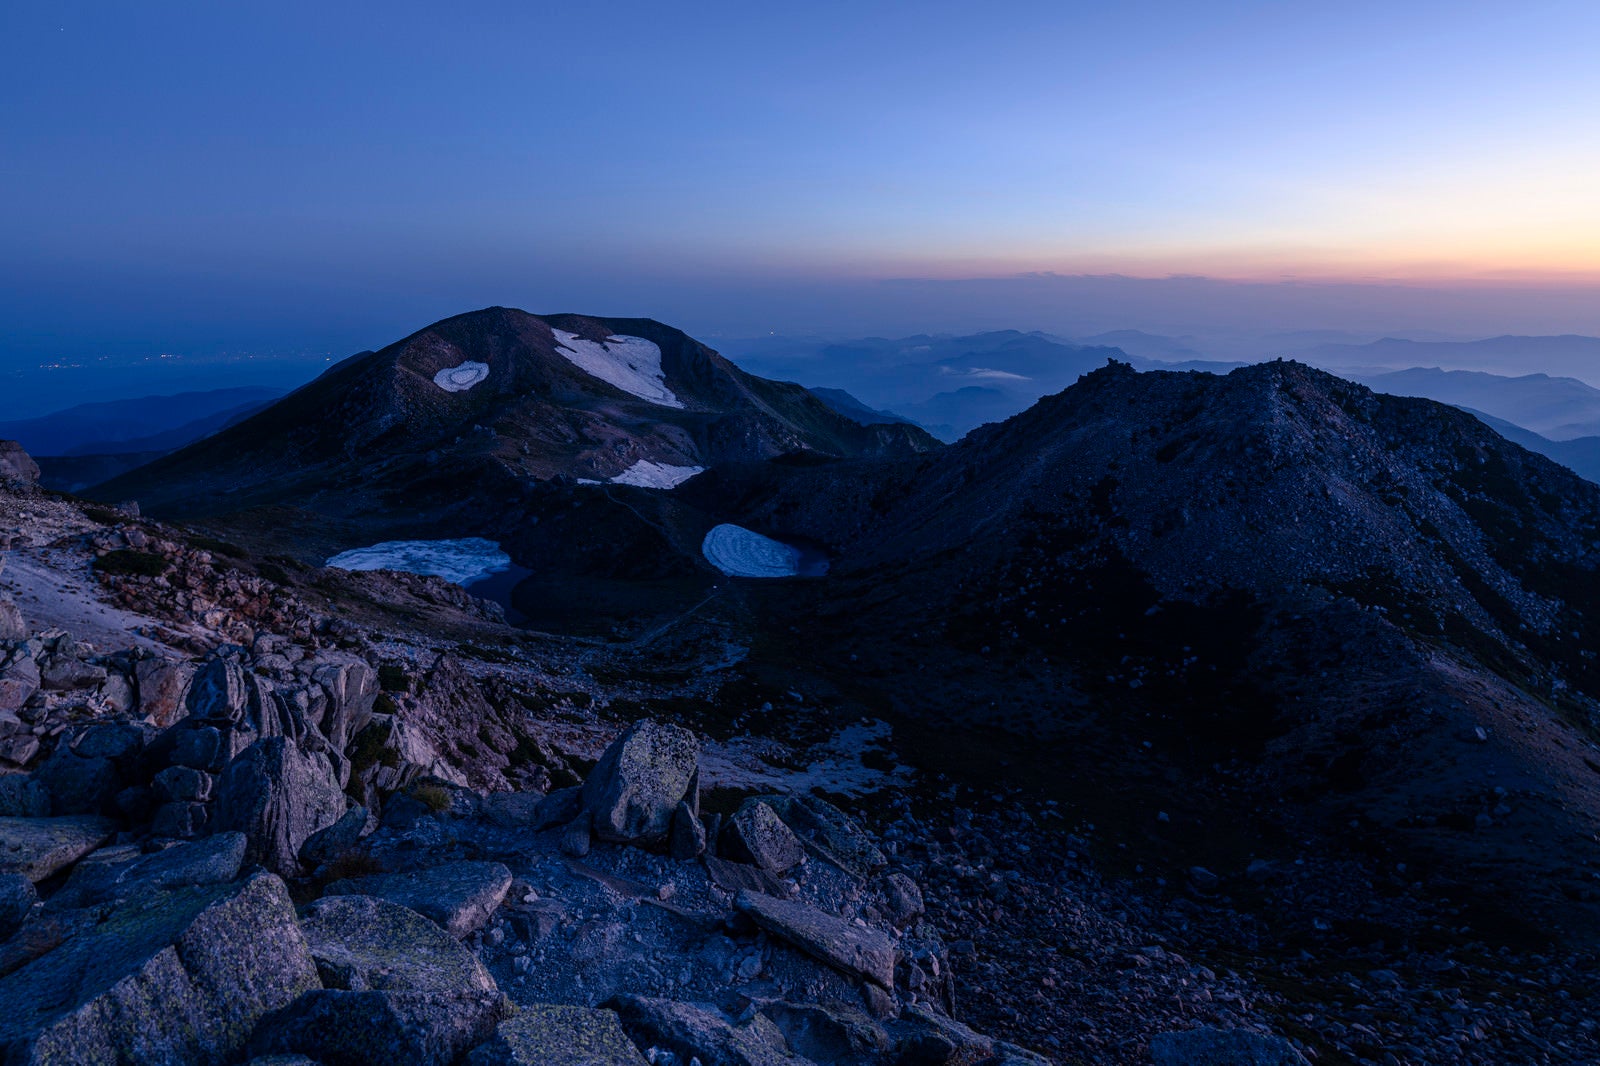 「夜明け前の白山山頂の景色」の写真